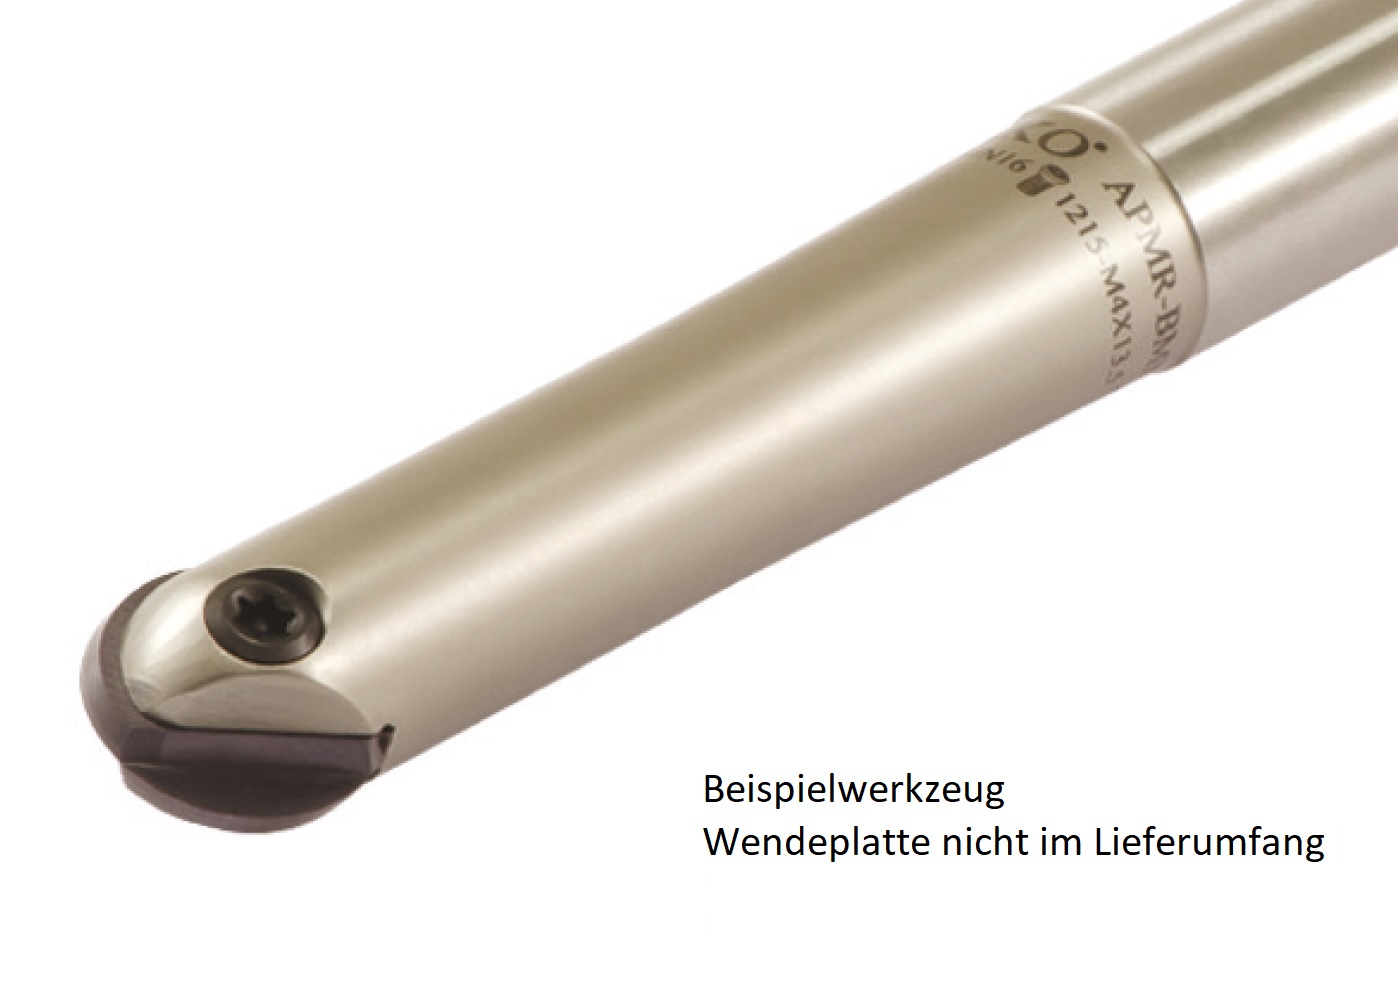 AKKO-Kugelkopierfräser für Wendeplatten ø 16 mm, kompatibel mit Dijet BNM 160-S
Schaft-ø 16, ohne Innenkühlung, Z=2